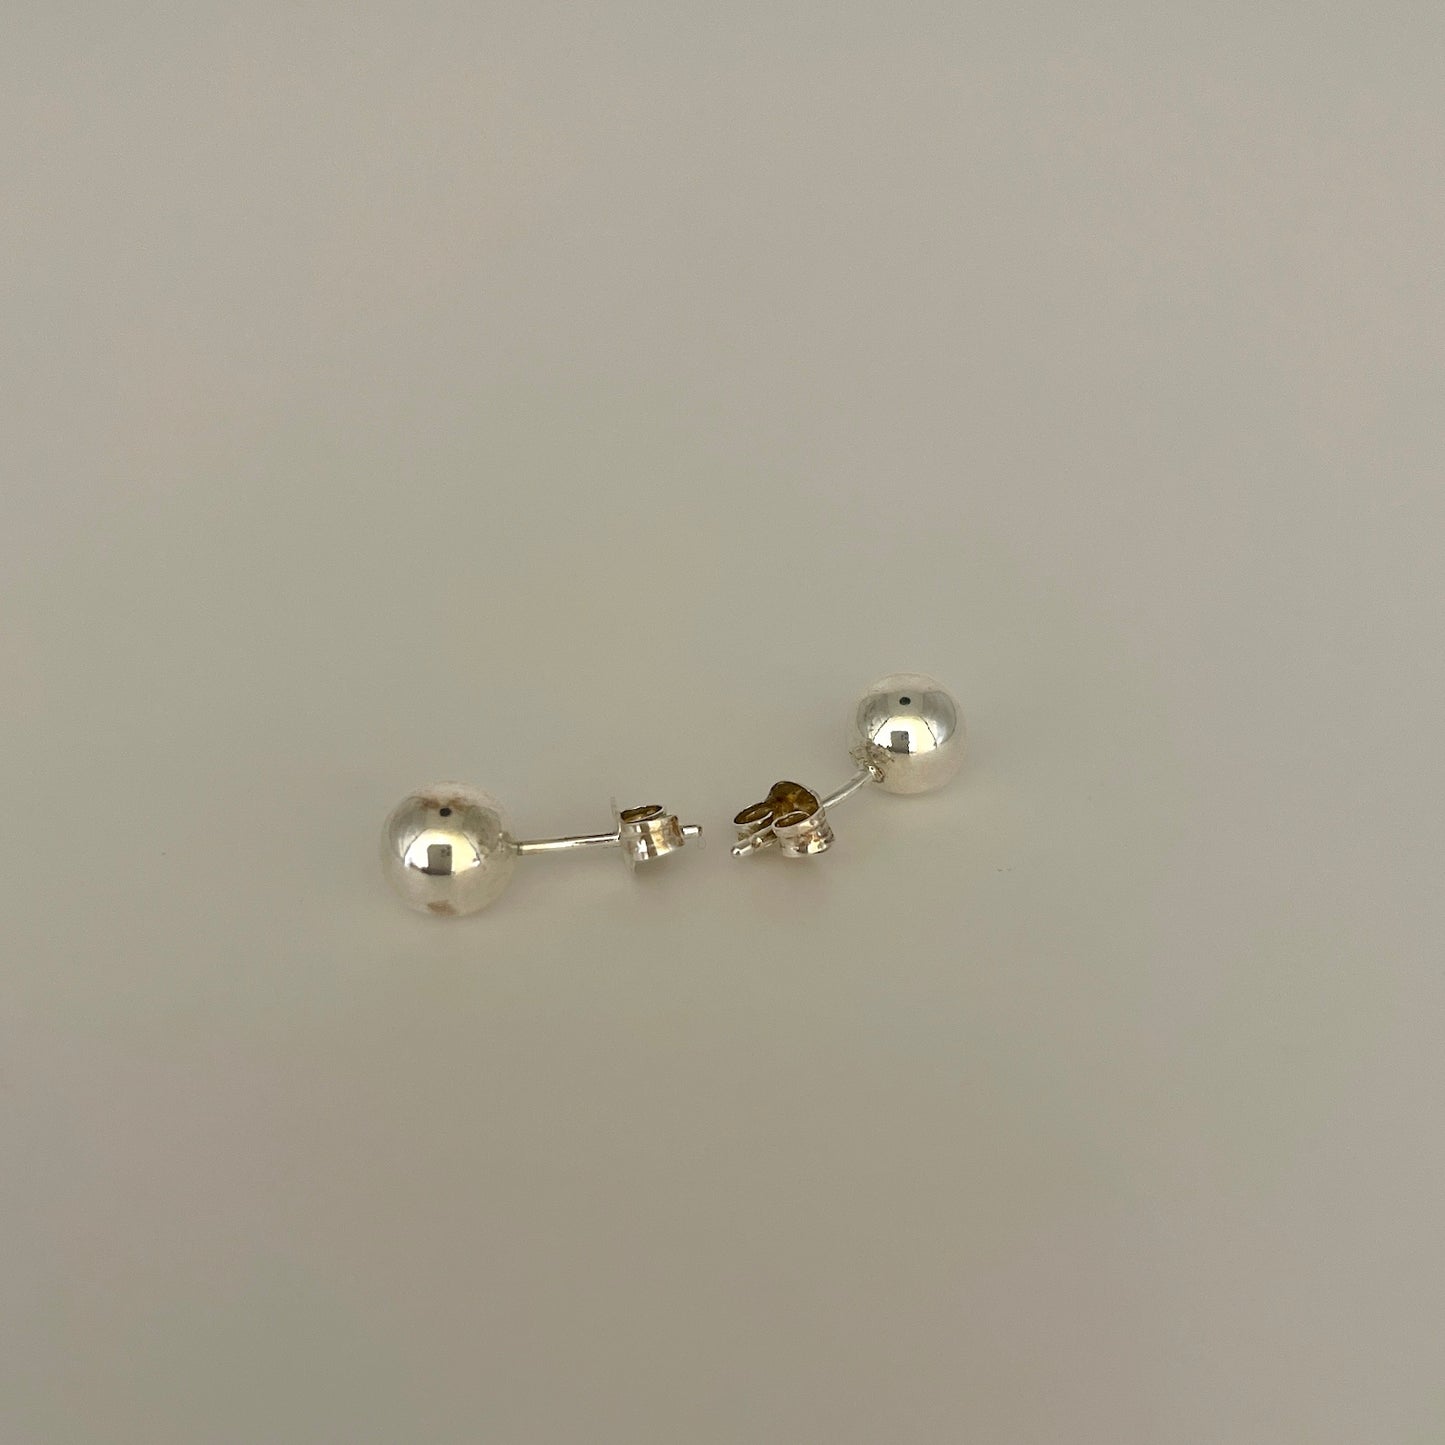 Silver Bead Stud Earrings 0.25"